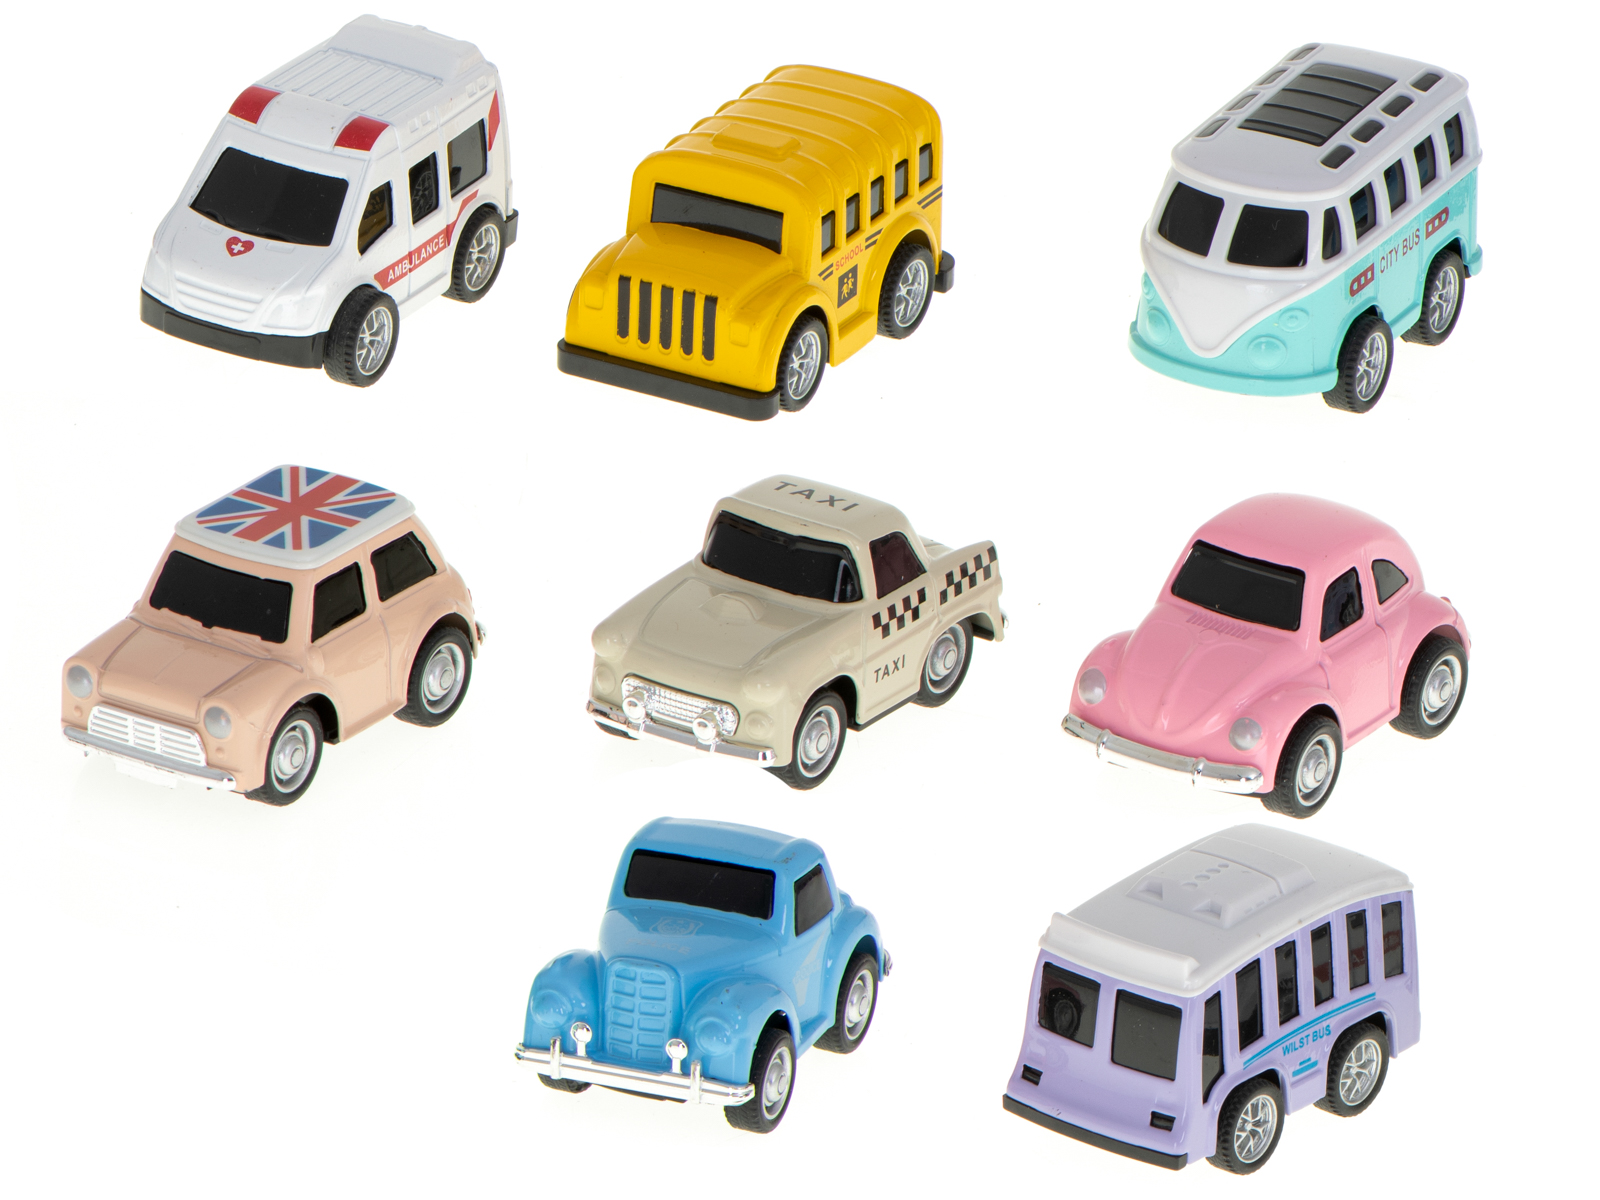 Set 8 Vehicule de Jucarie, Model Retro, Metalice, de Mici Dimensiuni, Include 3 Autobuze, o Ambulanta si 4 Masini, Stimuleaza Recunoasterea Vehiculelor, Dimensiune Vehicul 6x3x4cm, Indiggo, 3ani+, Multicolor